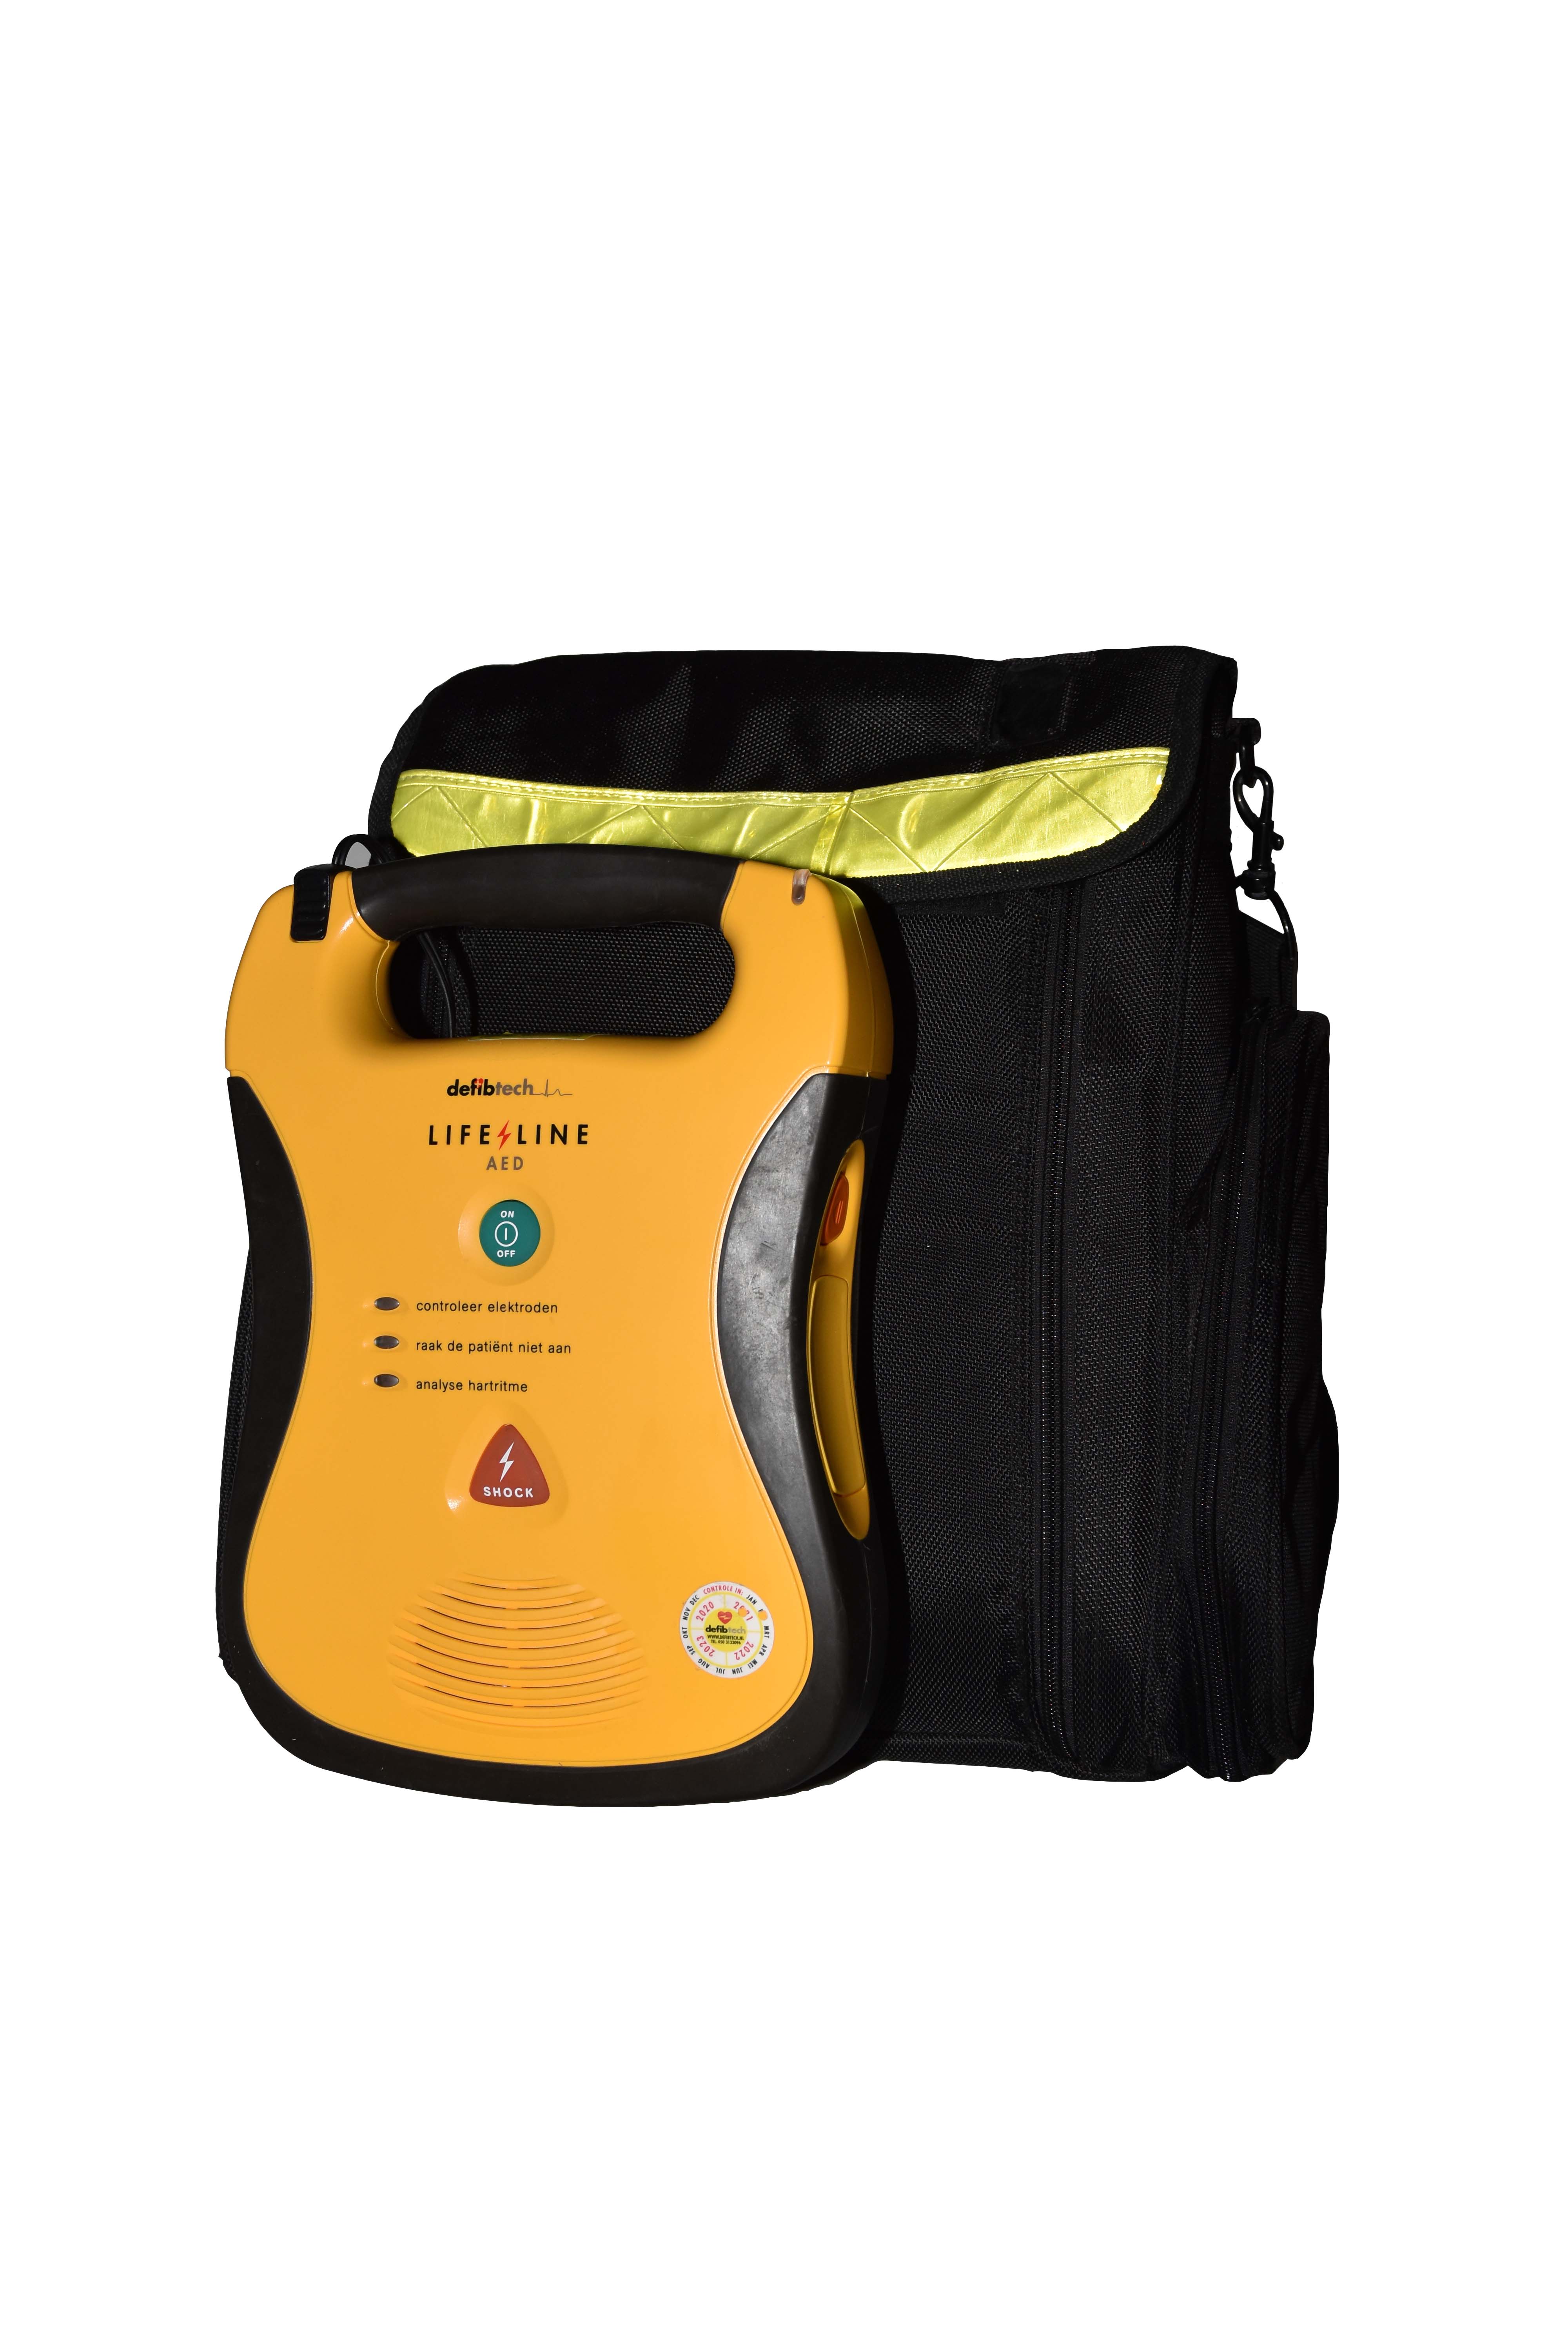 Defibrillator lifeline view kit